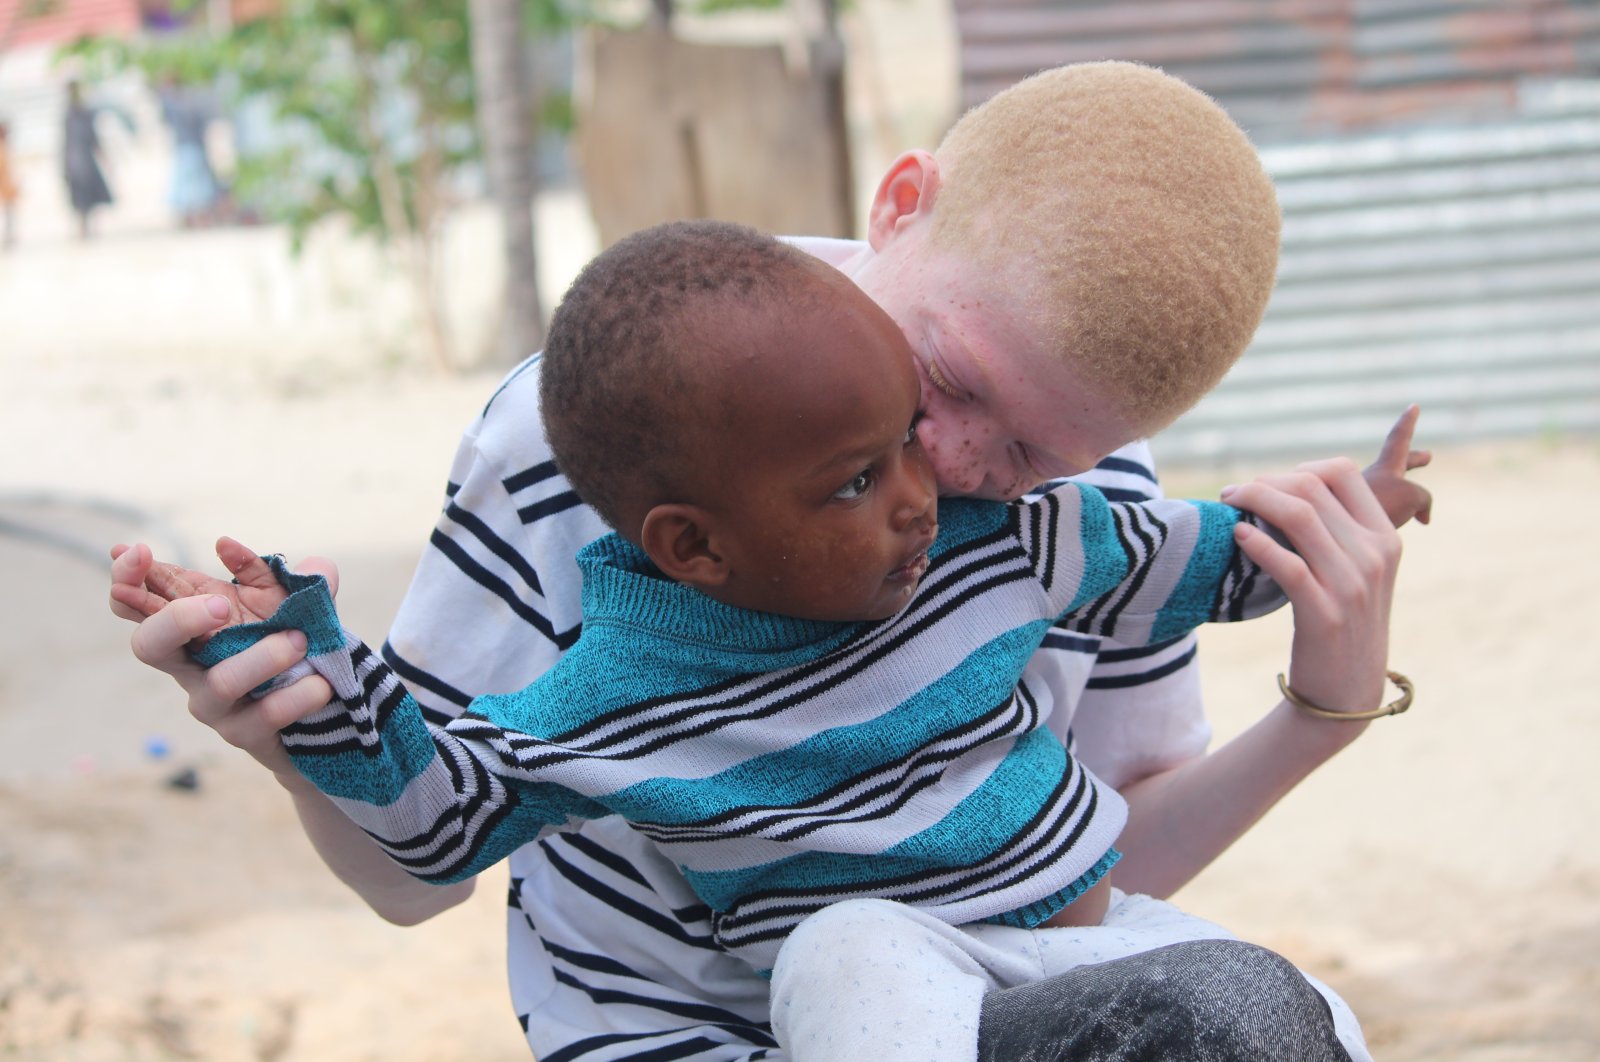 Individu dengan albinisme menghadapi pelanggaran hak asasi manusia secara global